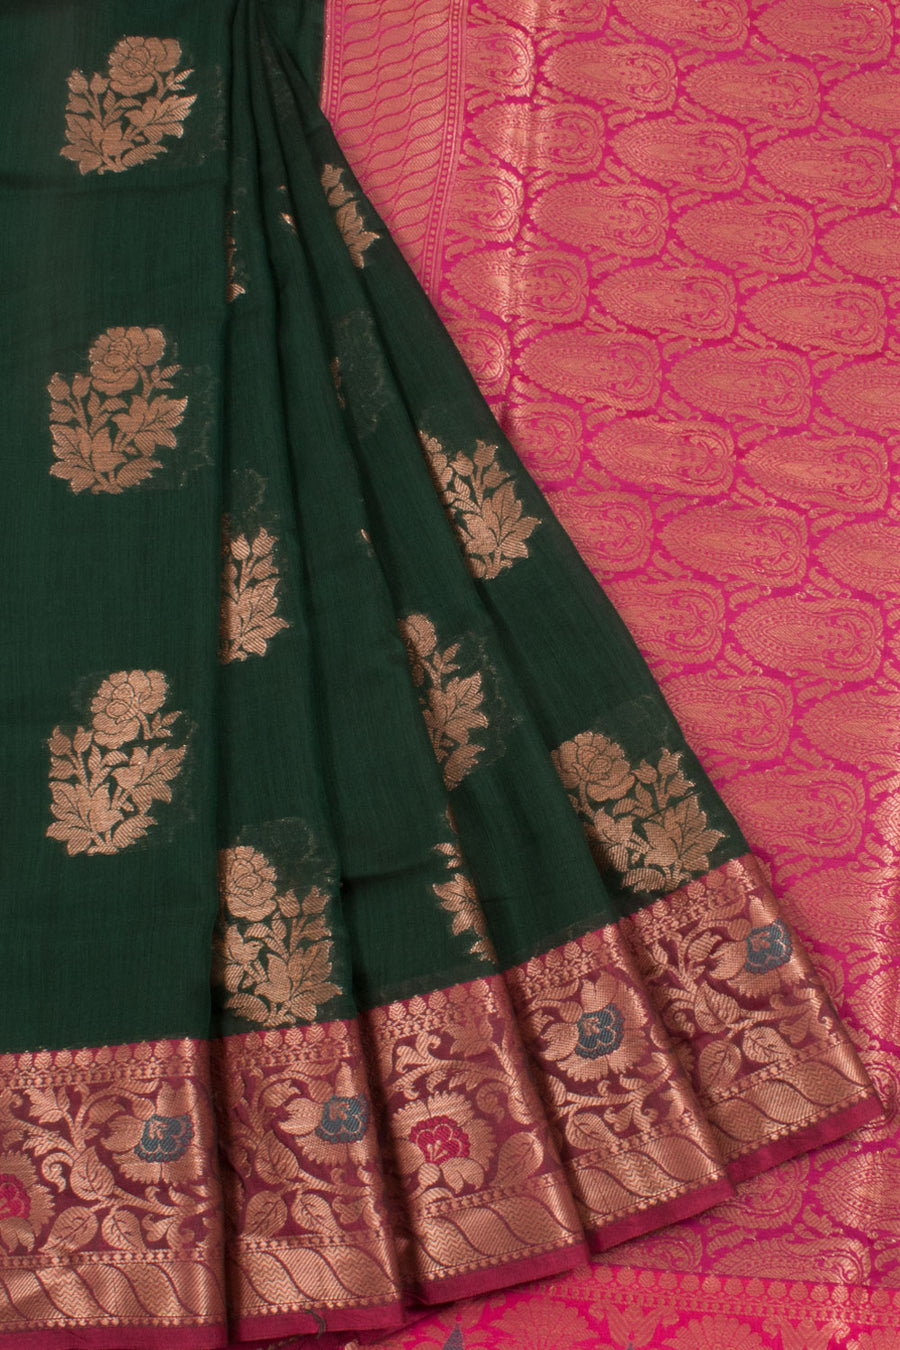 Banarasi Cotton Saree with Floral Motifs, Meenakari Border and Brocade Blouse